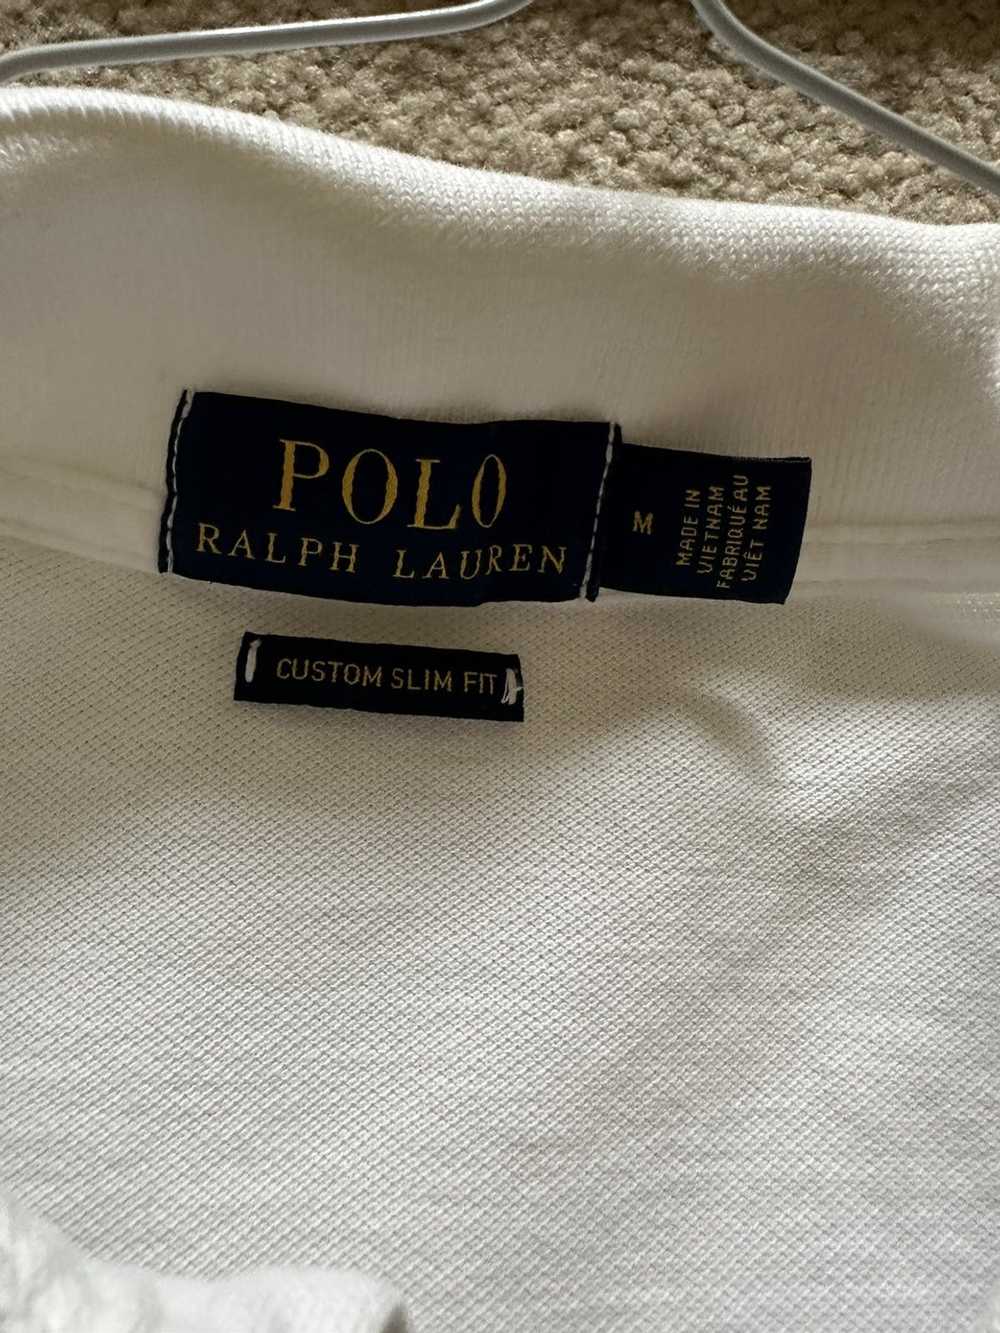 Polo Ralph Lauren Polo Short Sleeve Button Up - image 5